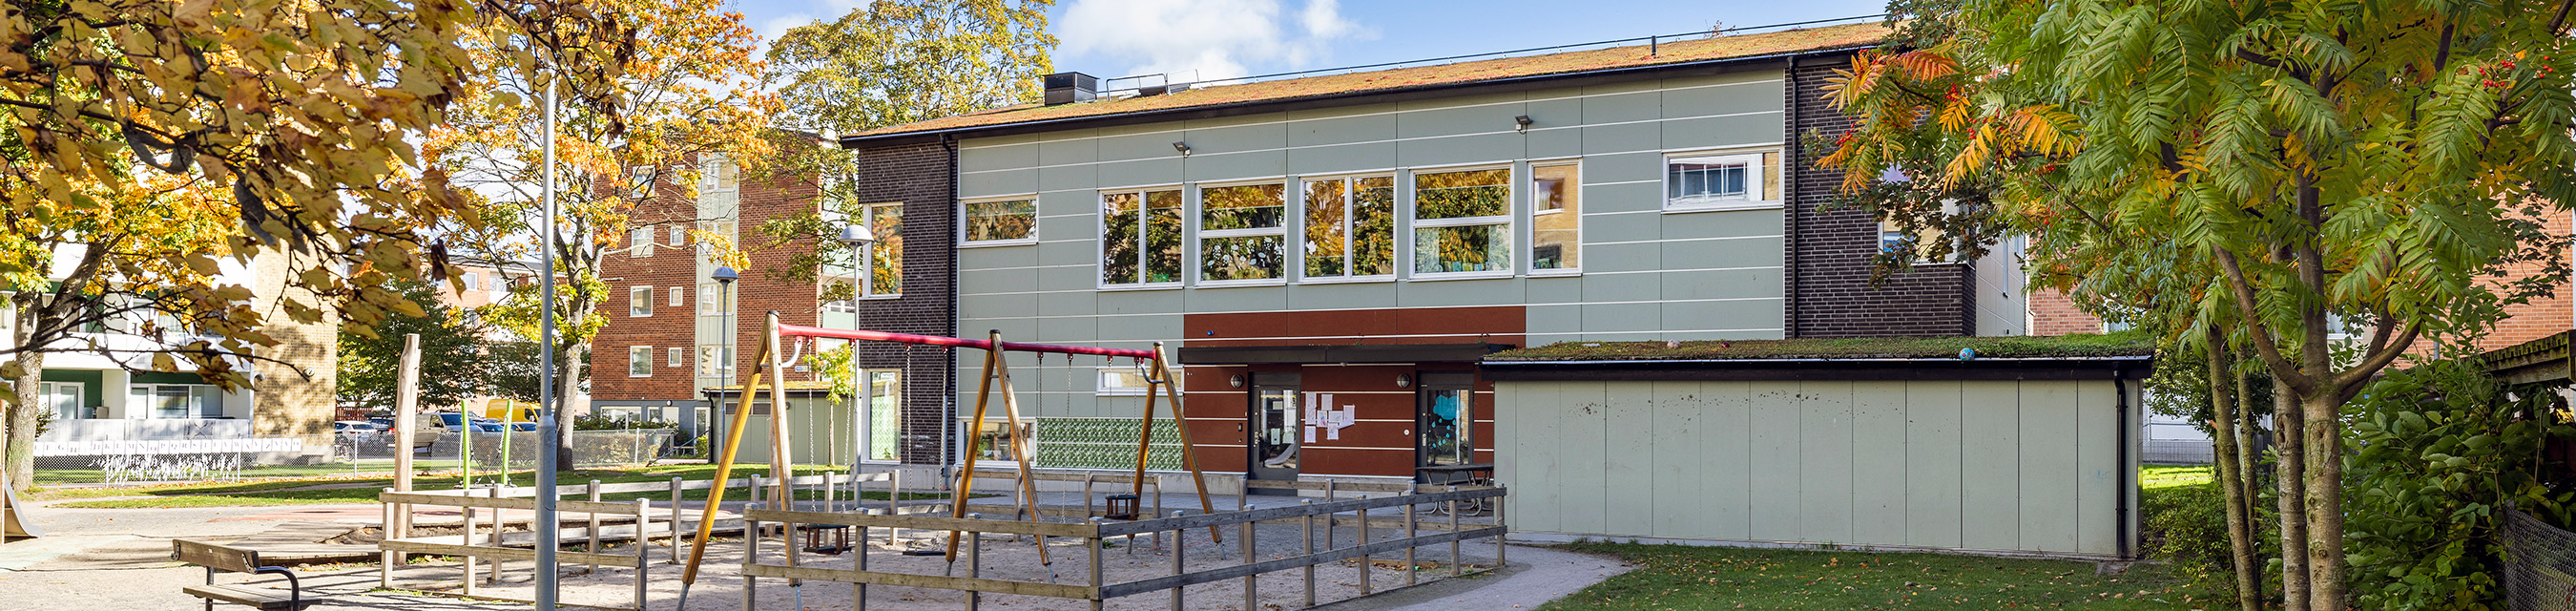 Stackens förskola är byggd i två plan och har plats för 50-55 barn. 